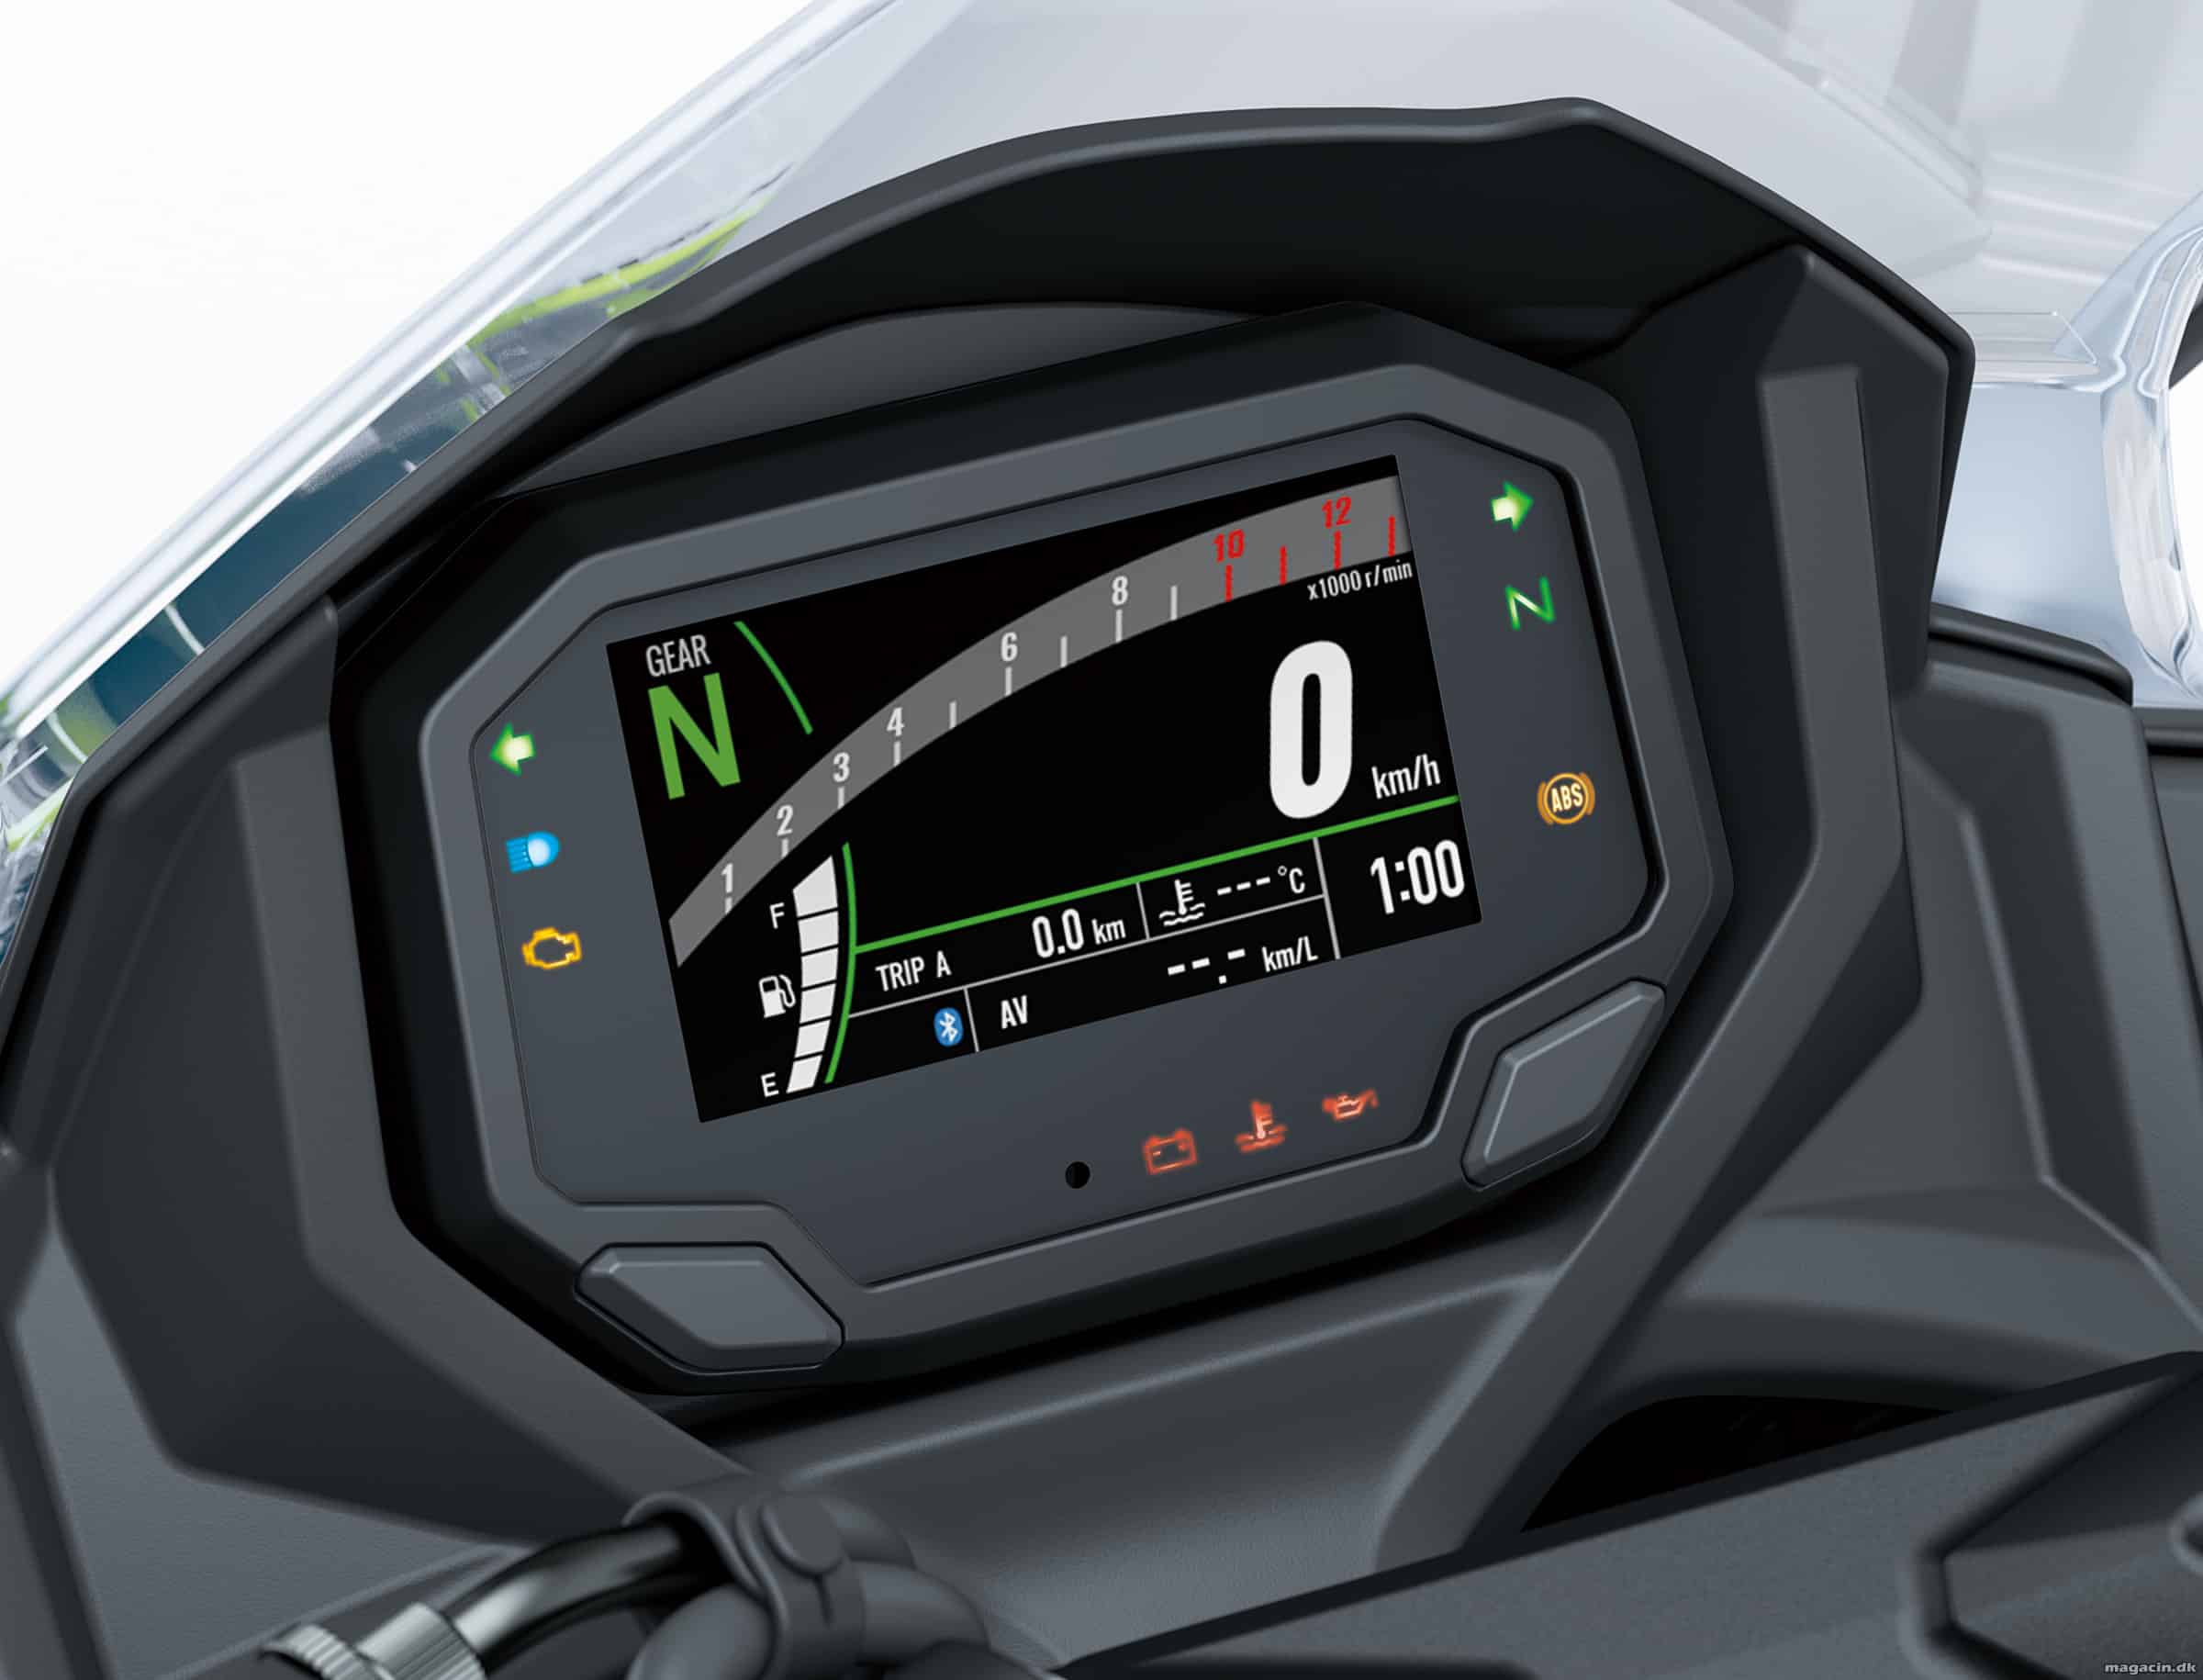 Kawasaki afslører den nye Ninja 650